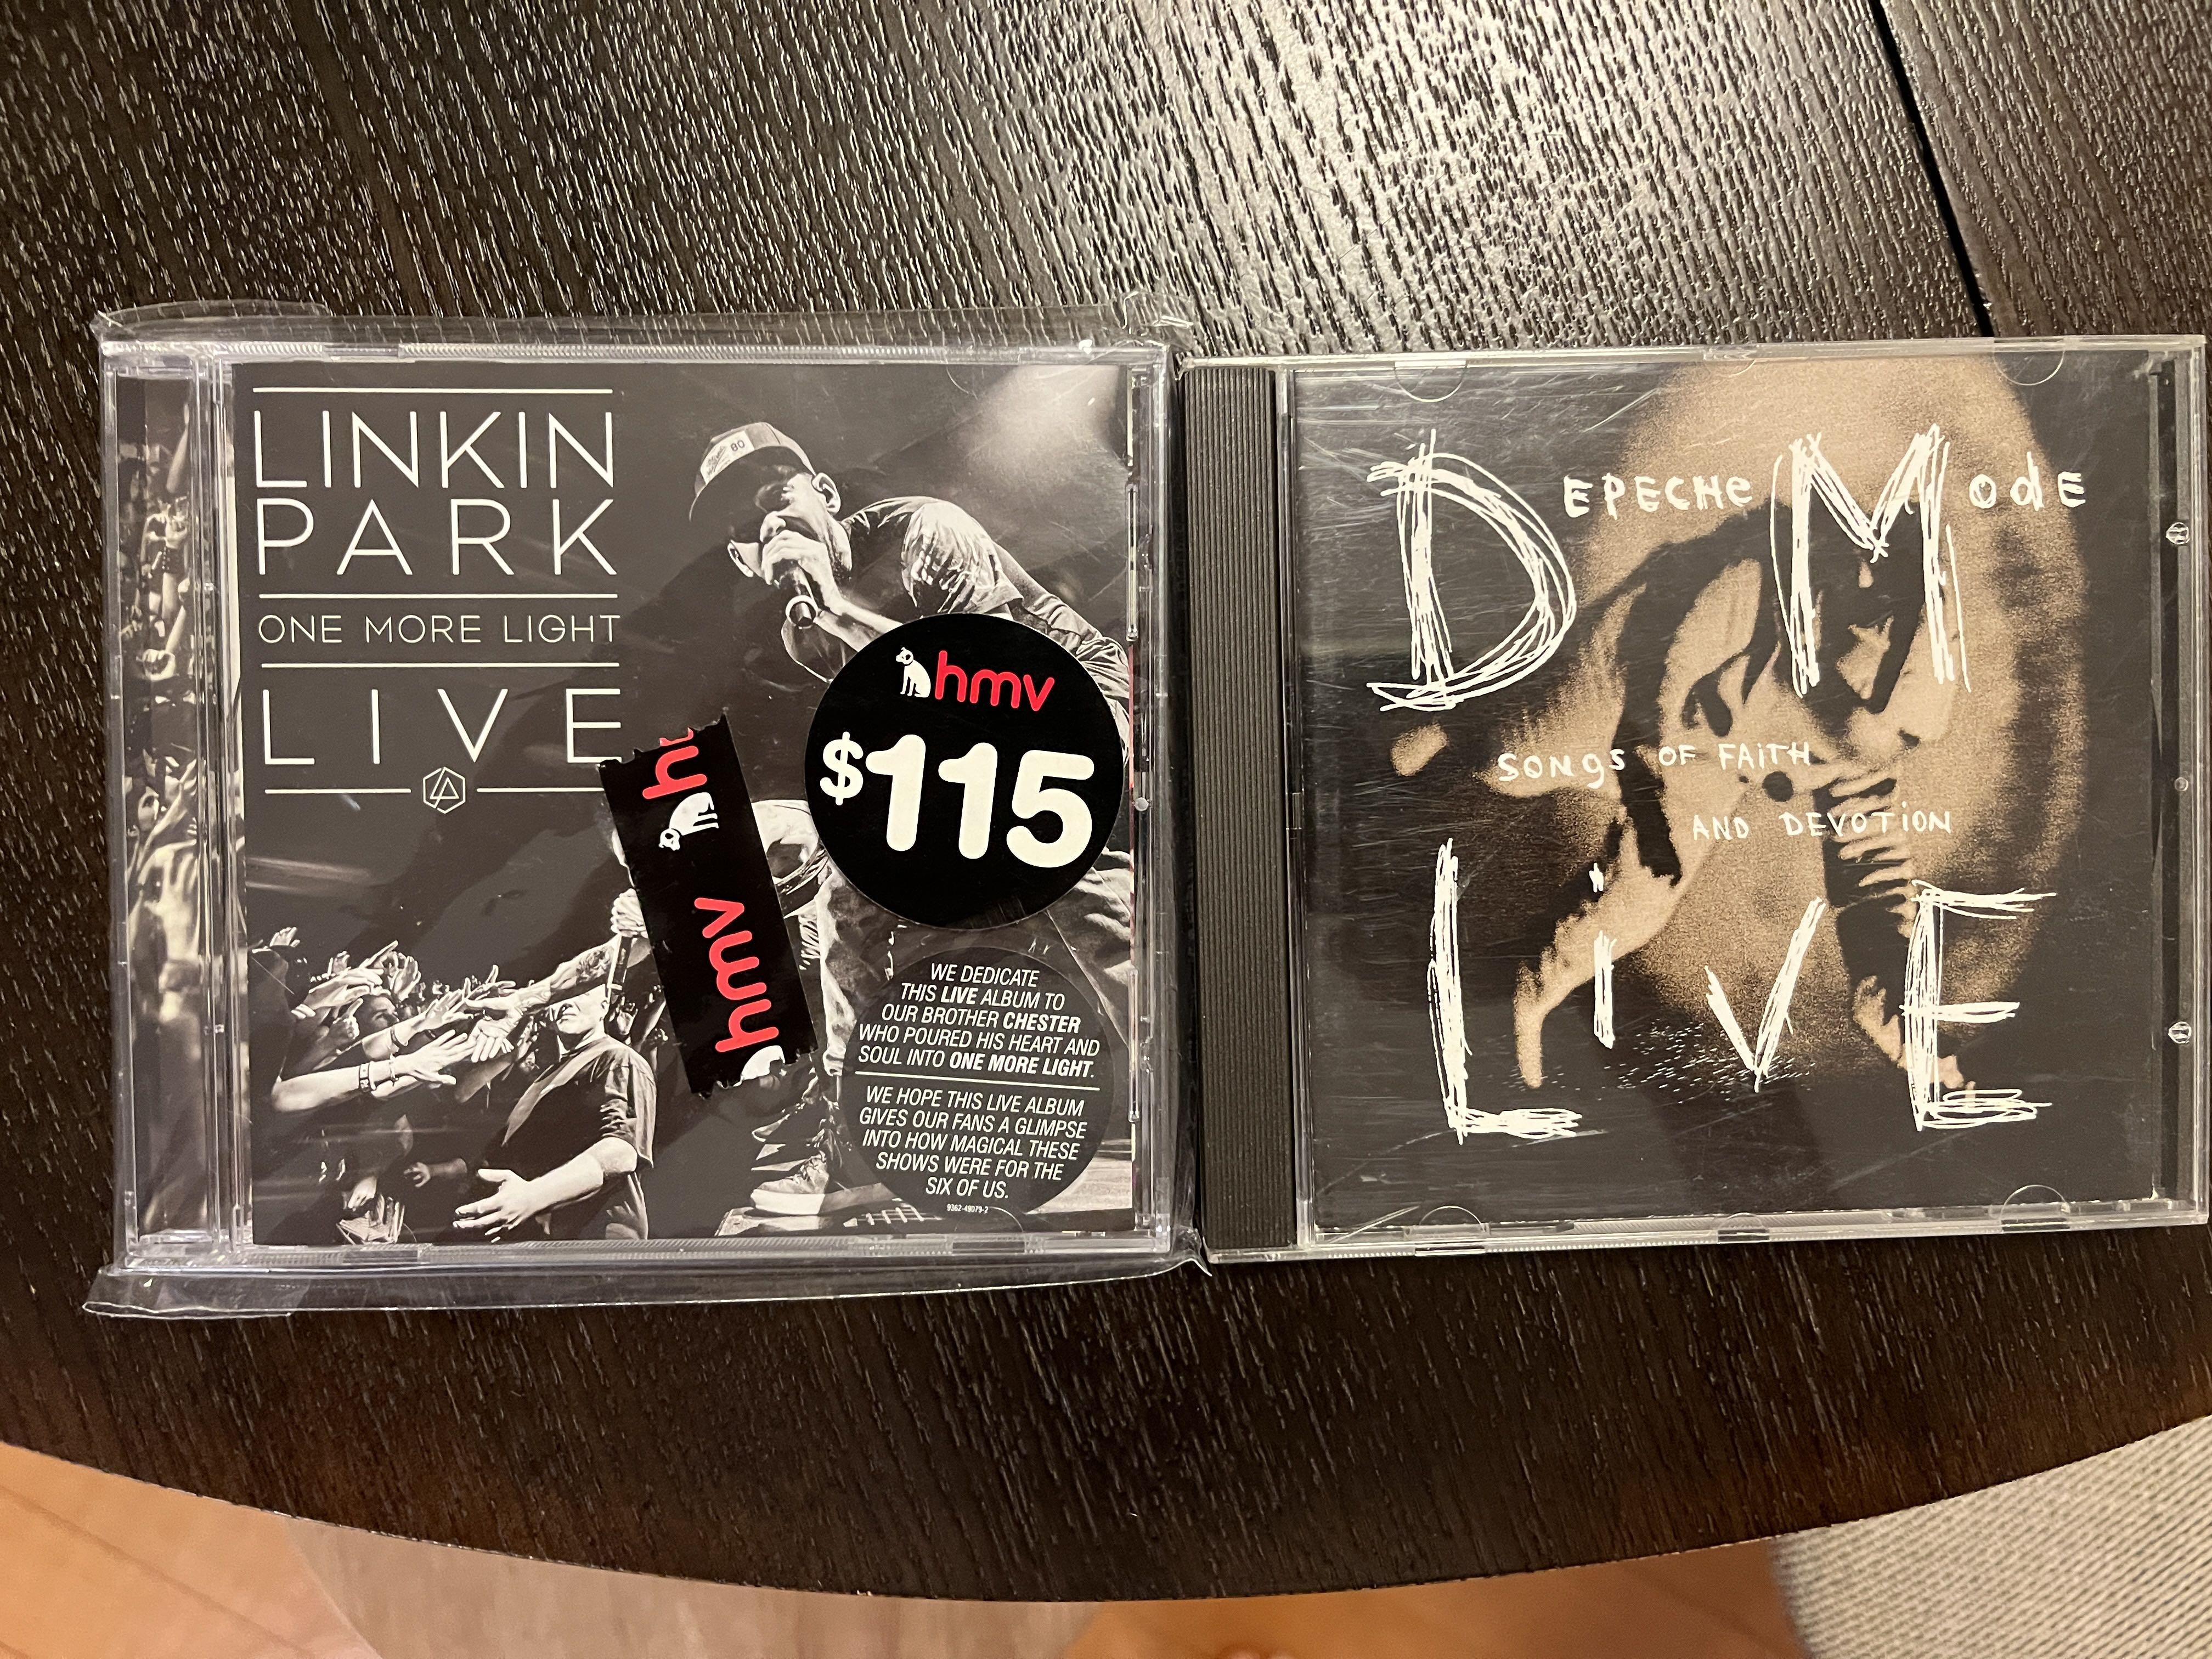 Linkin Park Depeche Mode live CD, 興趣及遊戲, 音樂、樂器& 配件